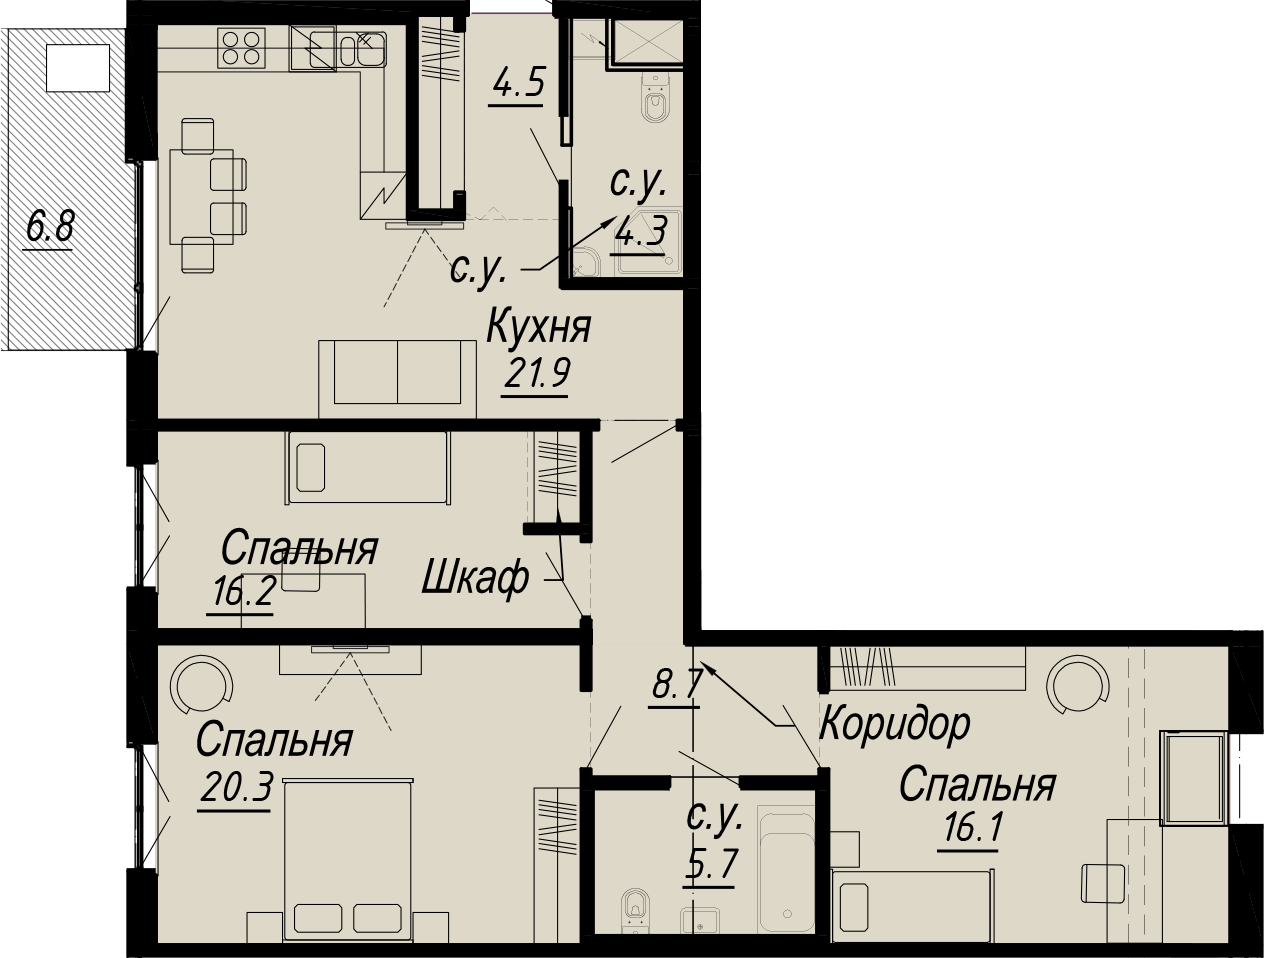 3-комнатная квартира  №11-7 в Meltzer Hall: 99.74 м², этаж 7 - купить в Санкт-Петербурге